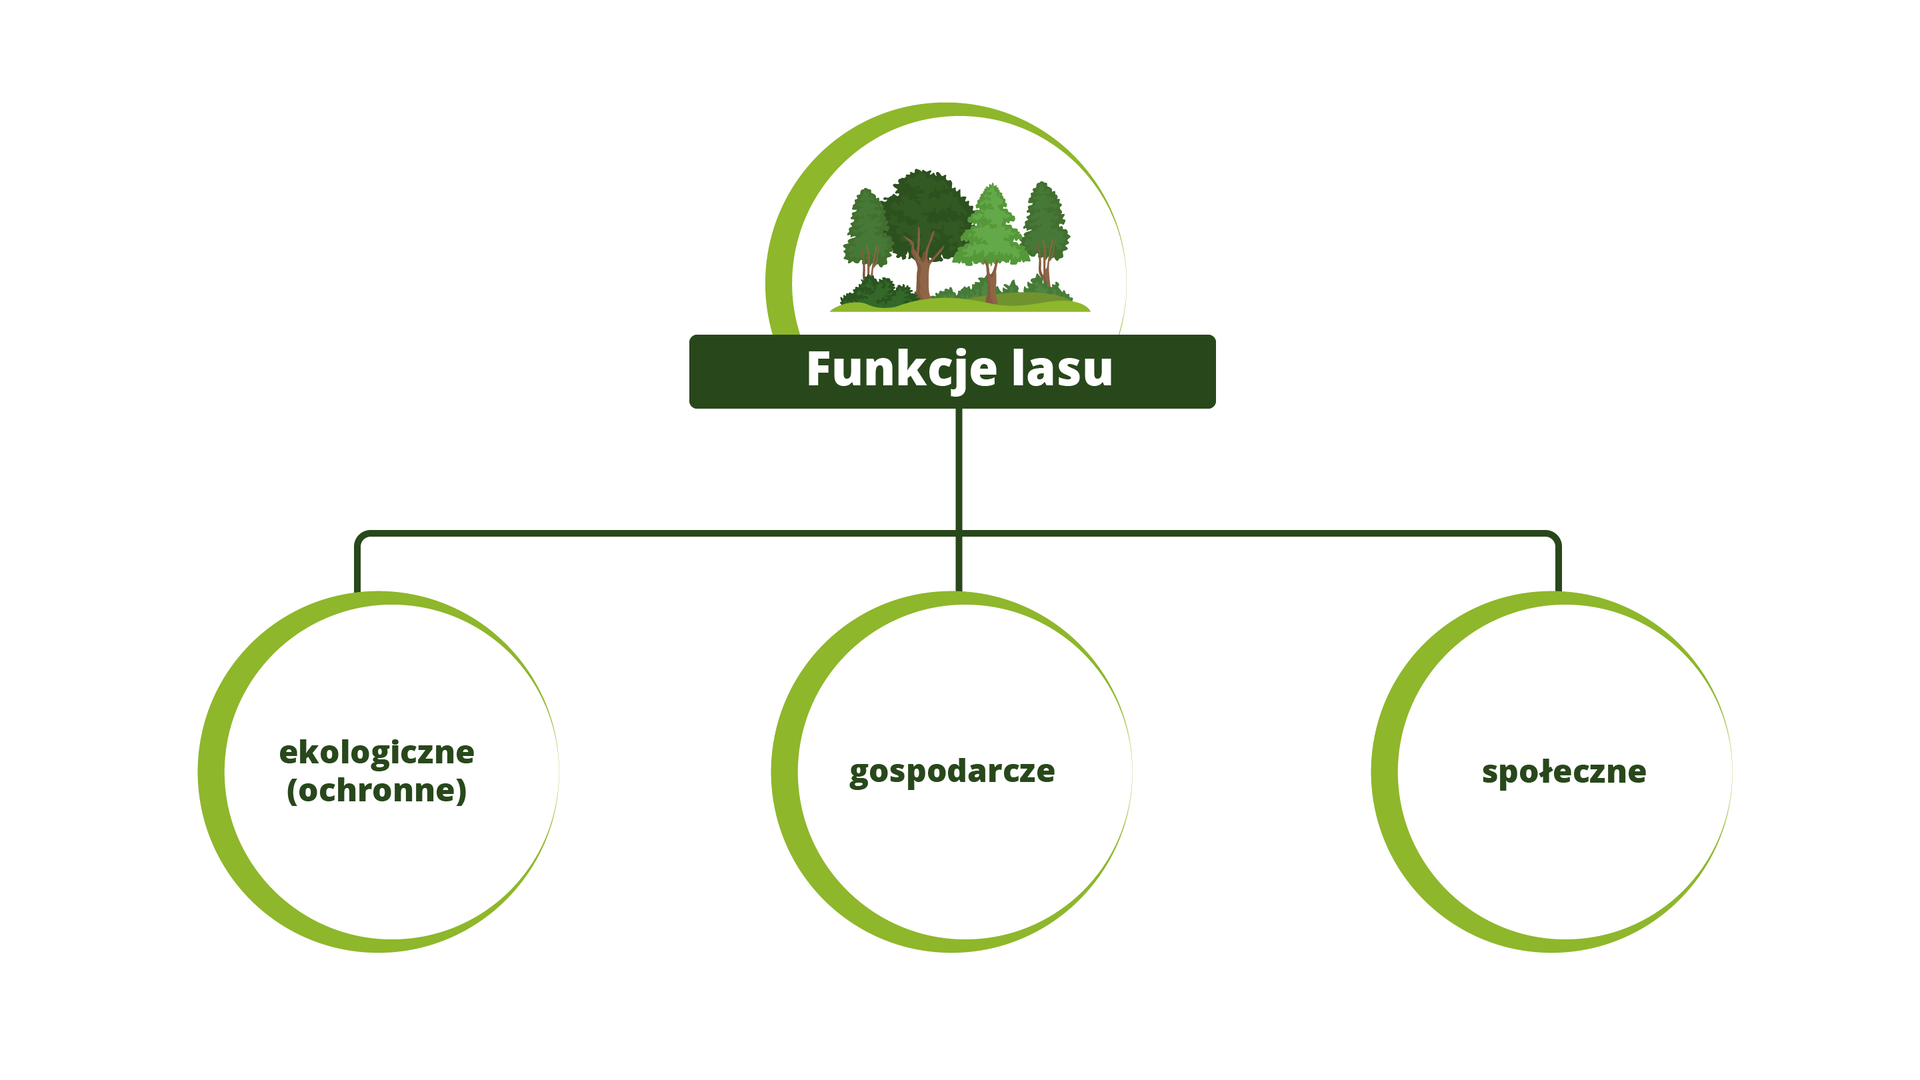 Funcje lasu, Źródło Englishsquare.pl Sp. z o.o., licencja – CC BY-SA 3.0.